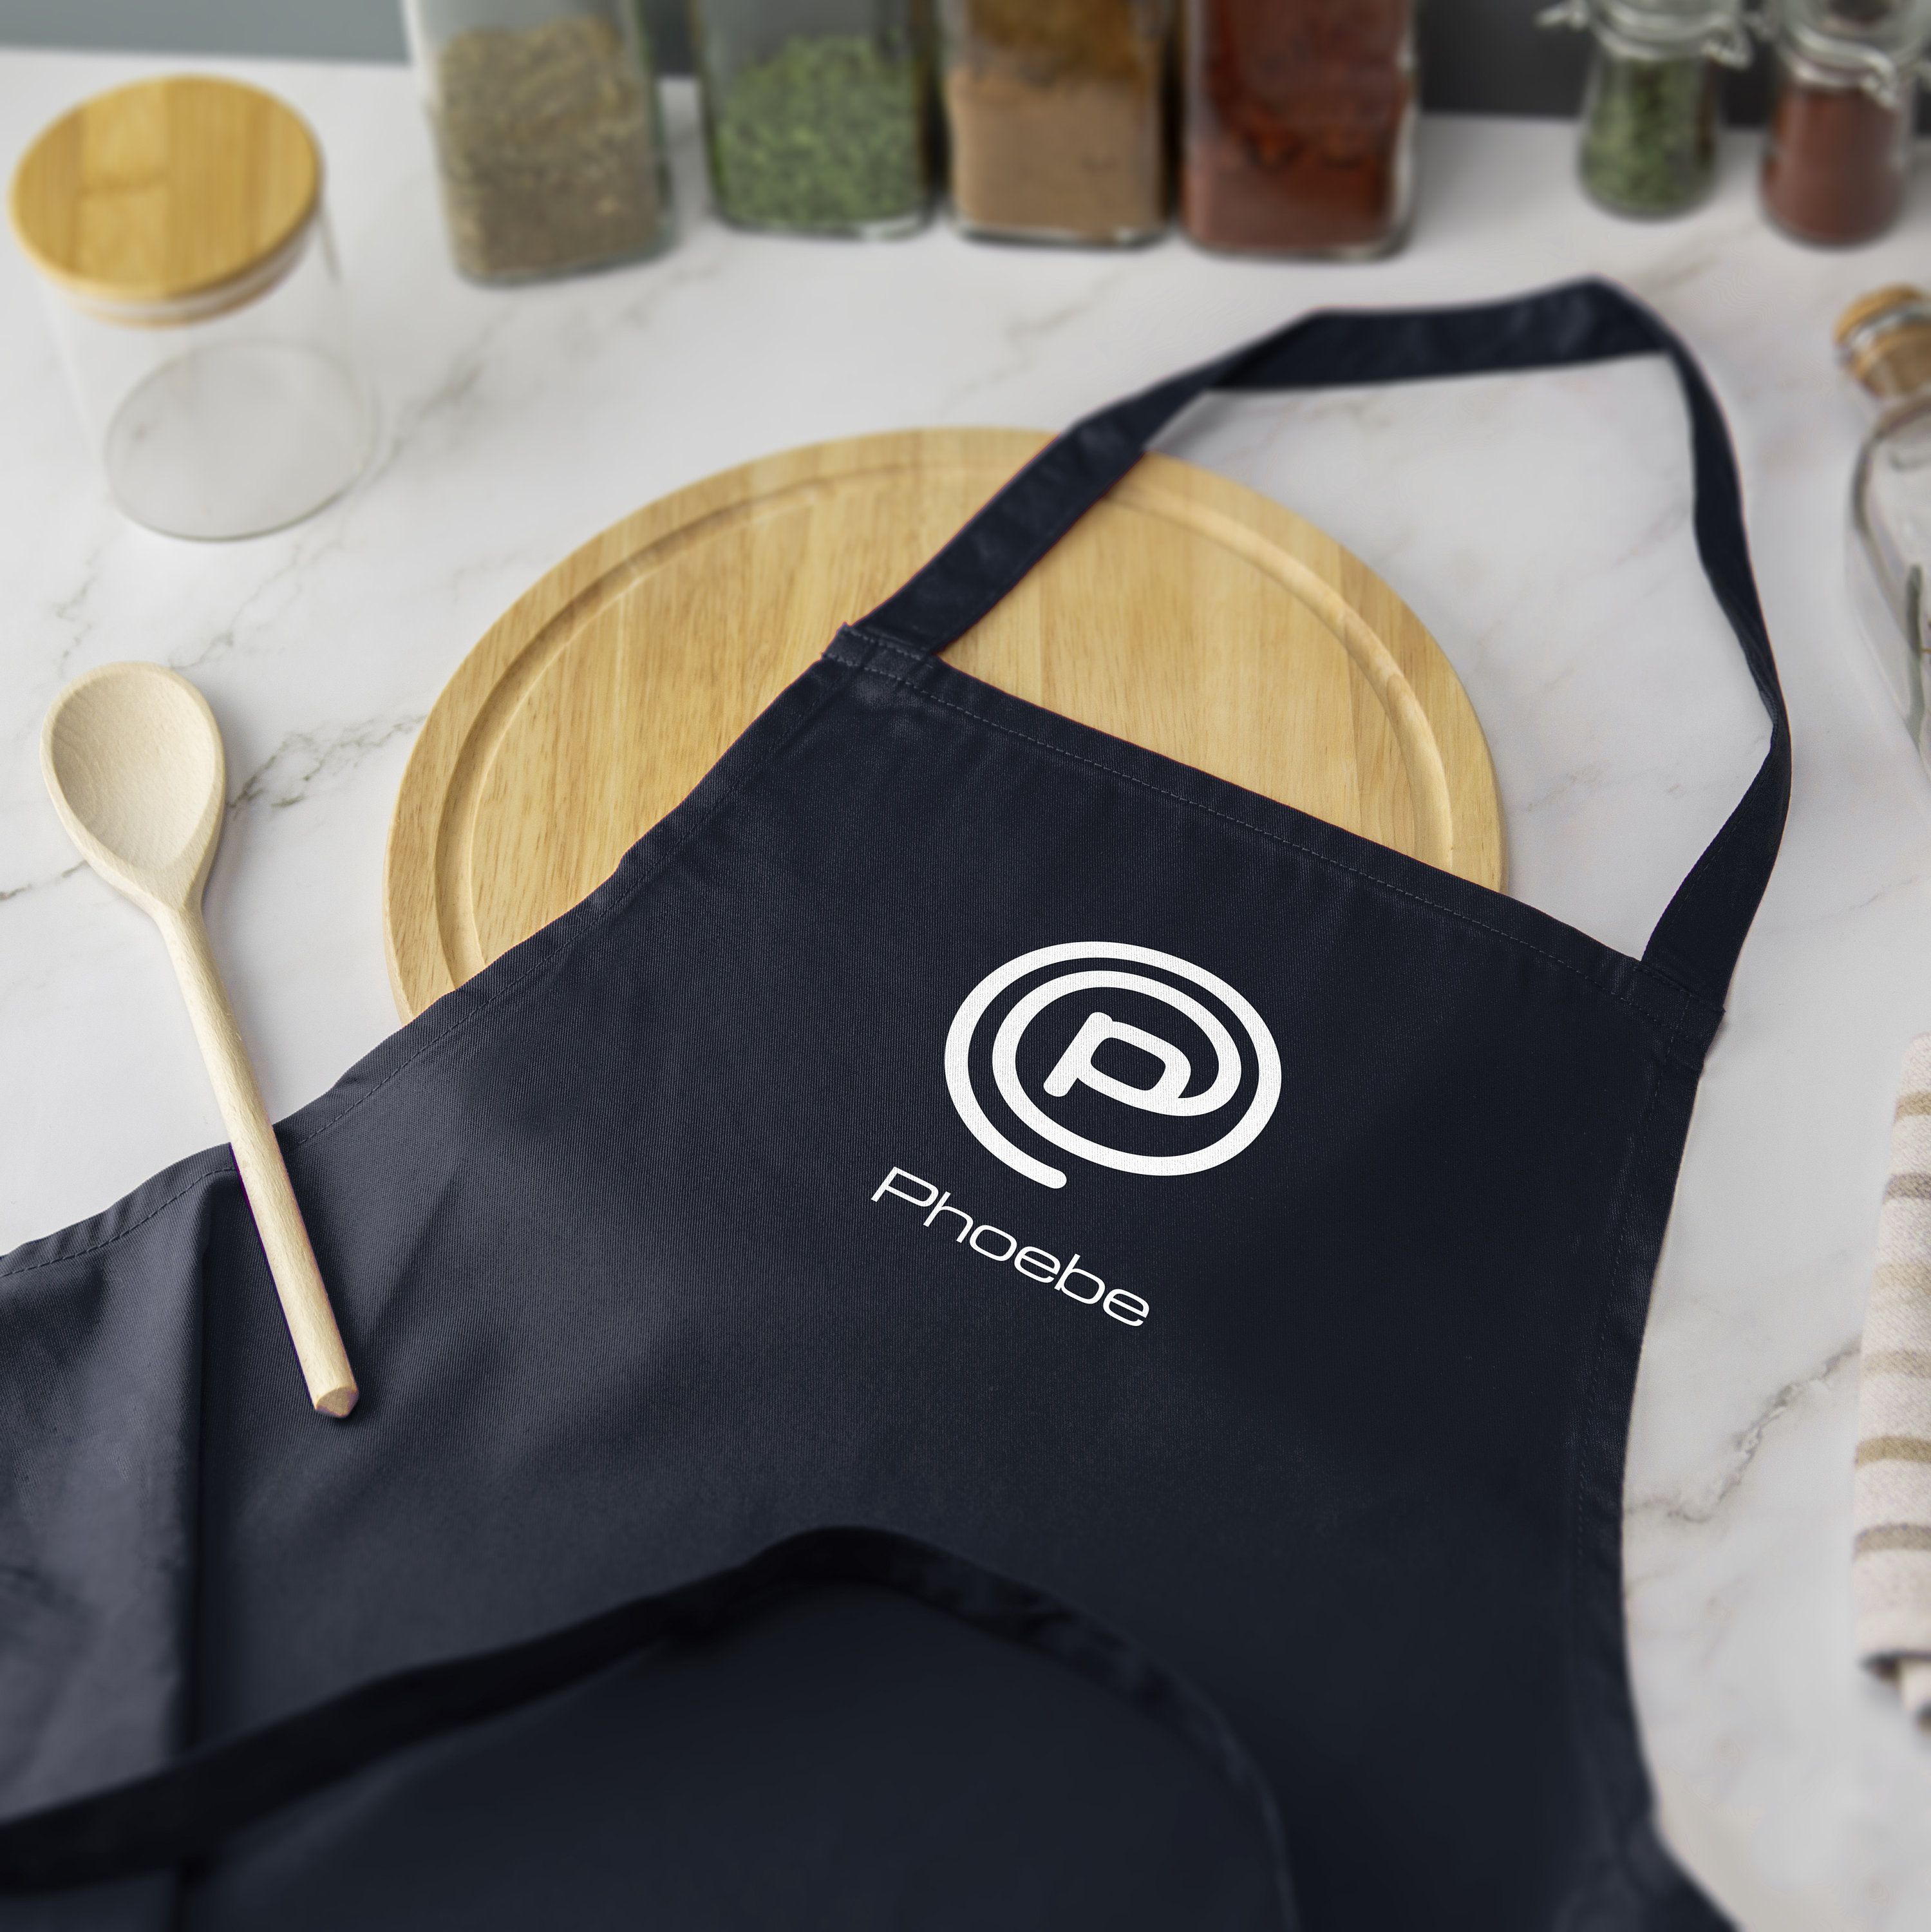 Delantal inspirado en Master Chef personalizado para hornear